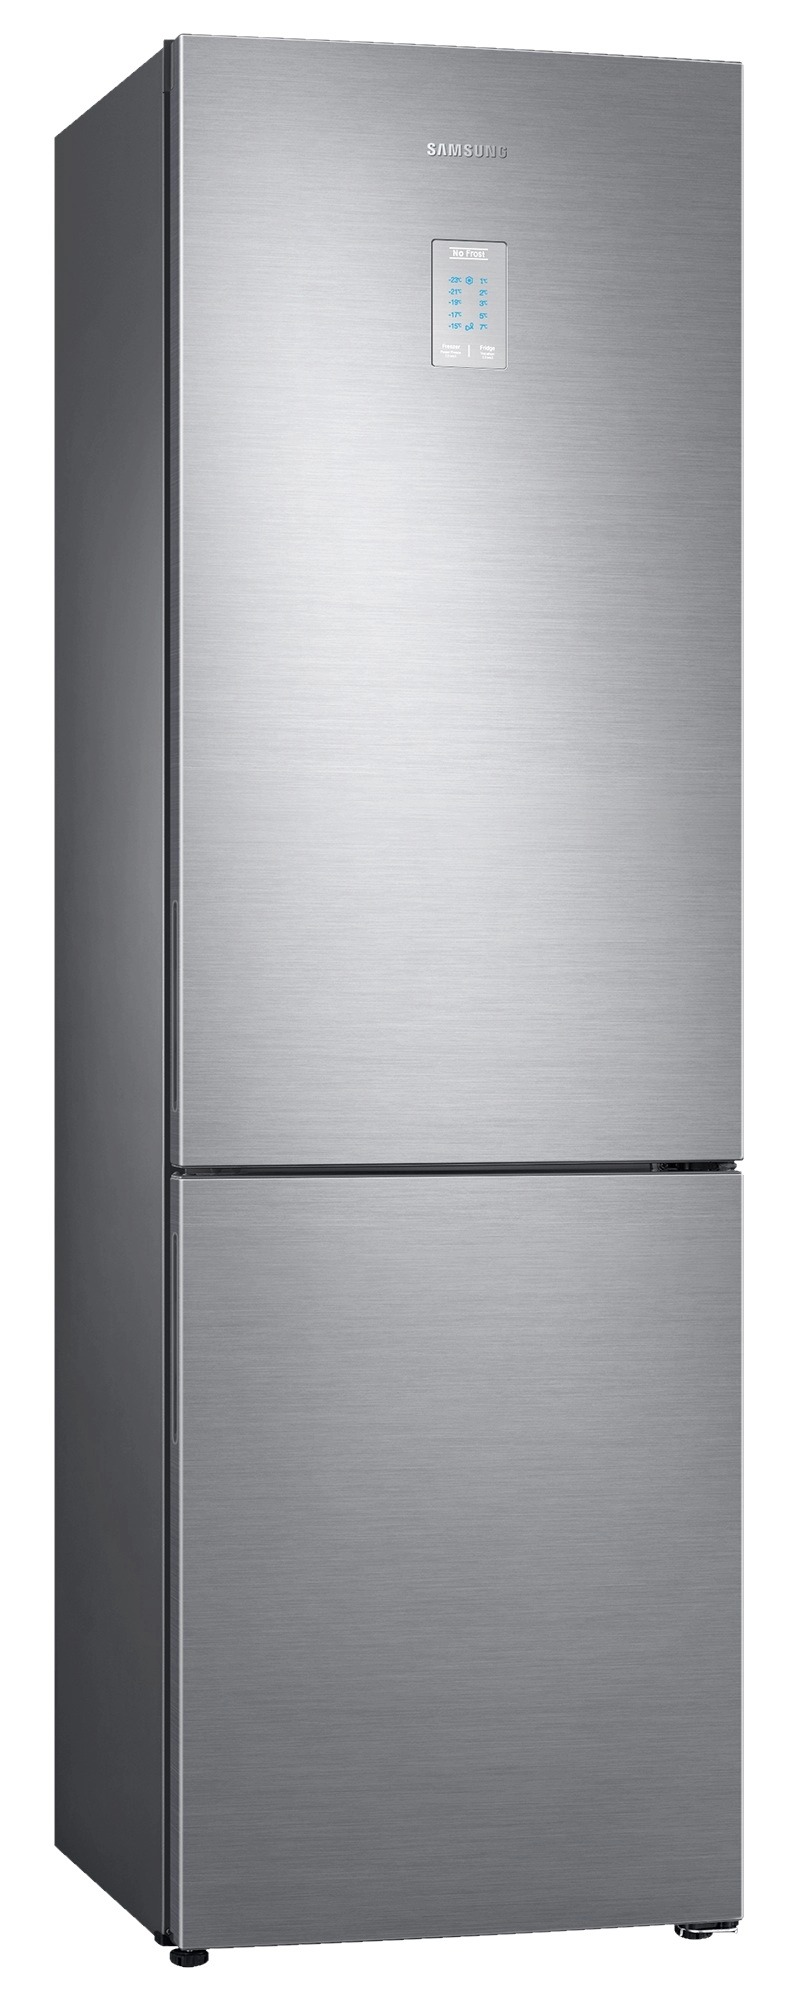 Холодильник с нижней морозильной камерой Samsung RB34N5440SS